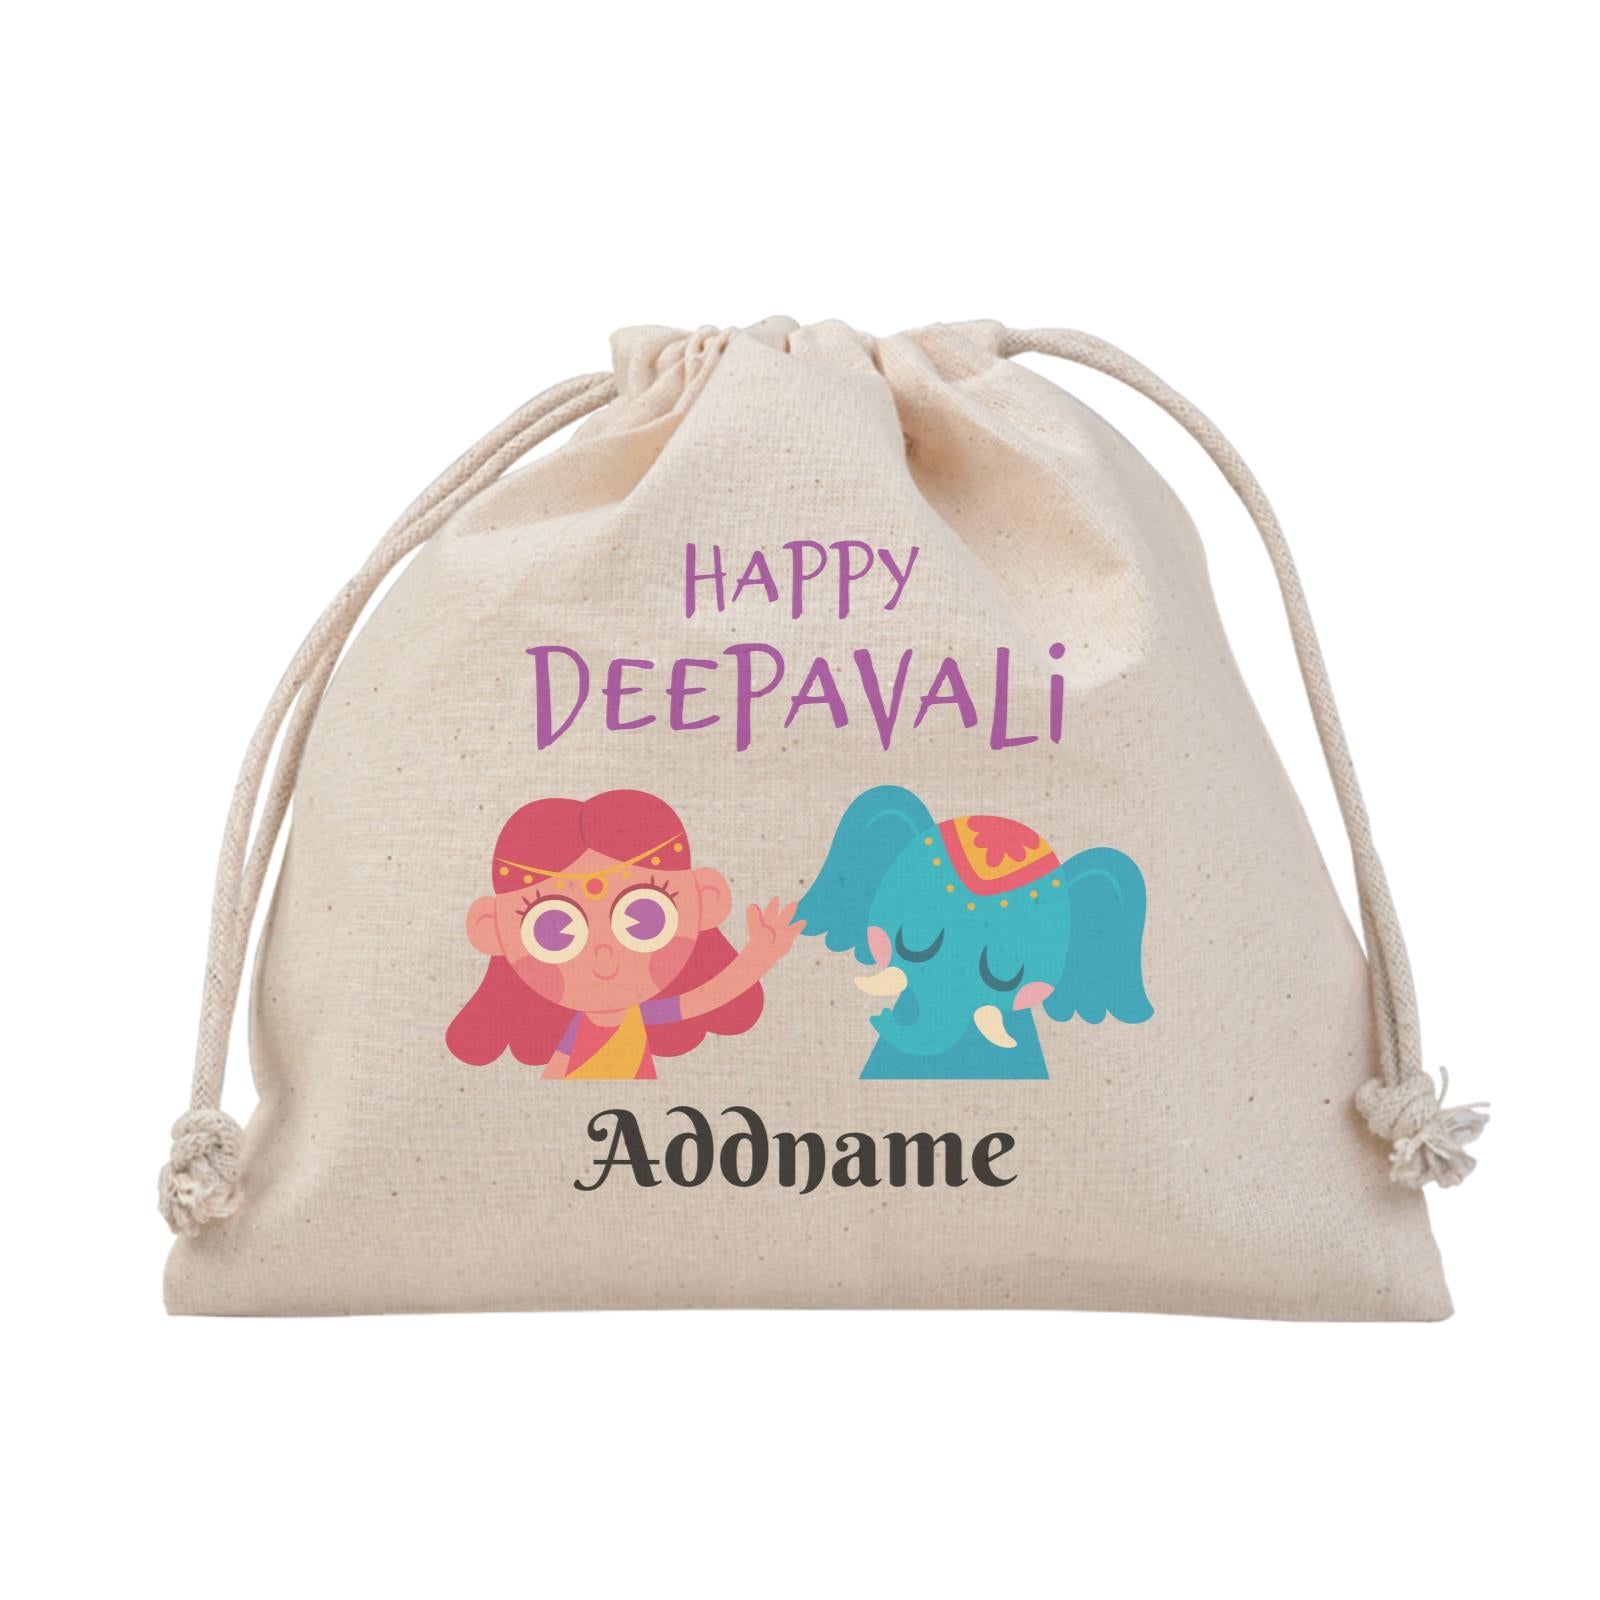 Deepavali Series Little Girl Wishes You Happy Deepavali Satchel